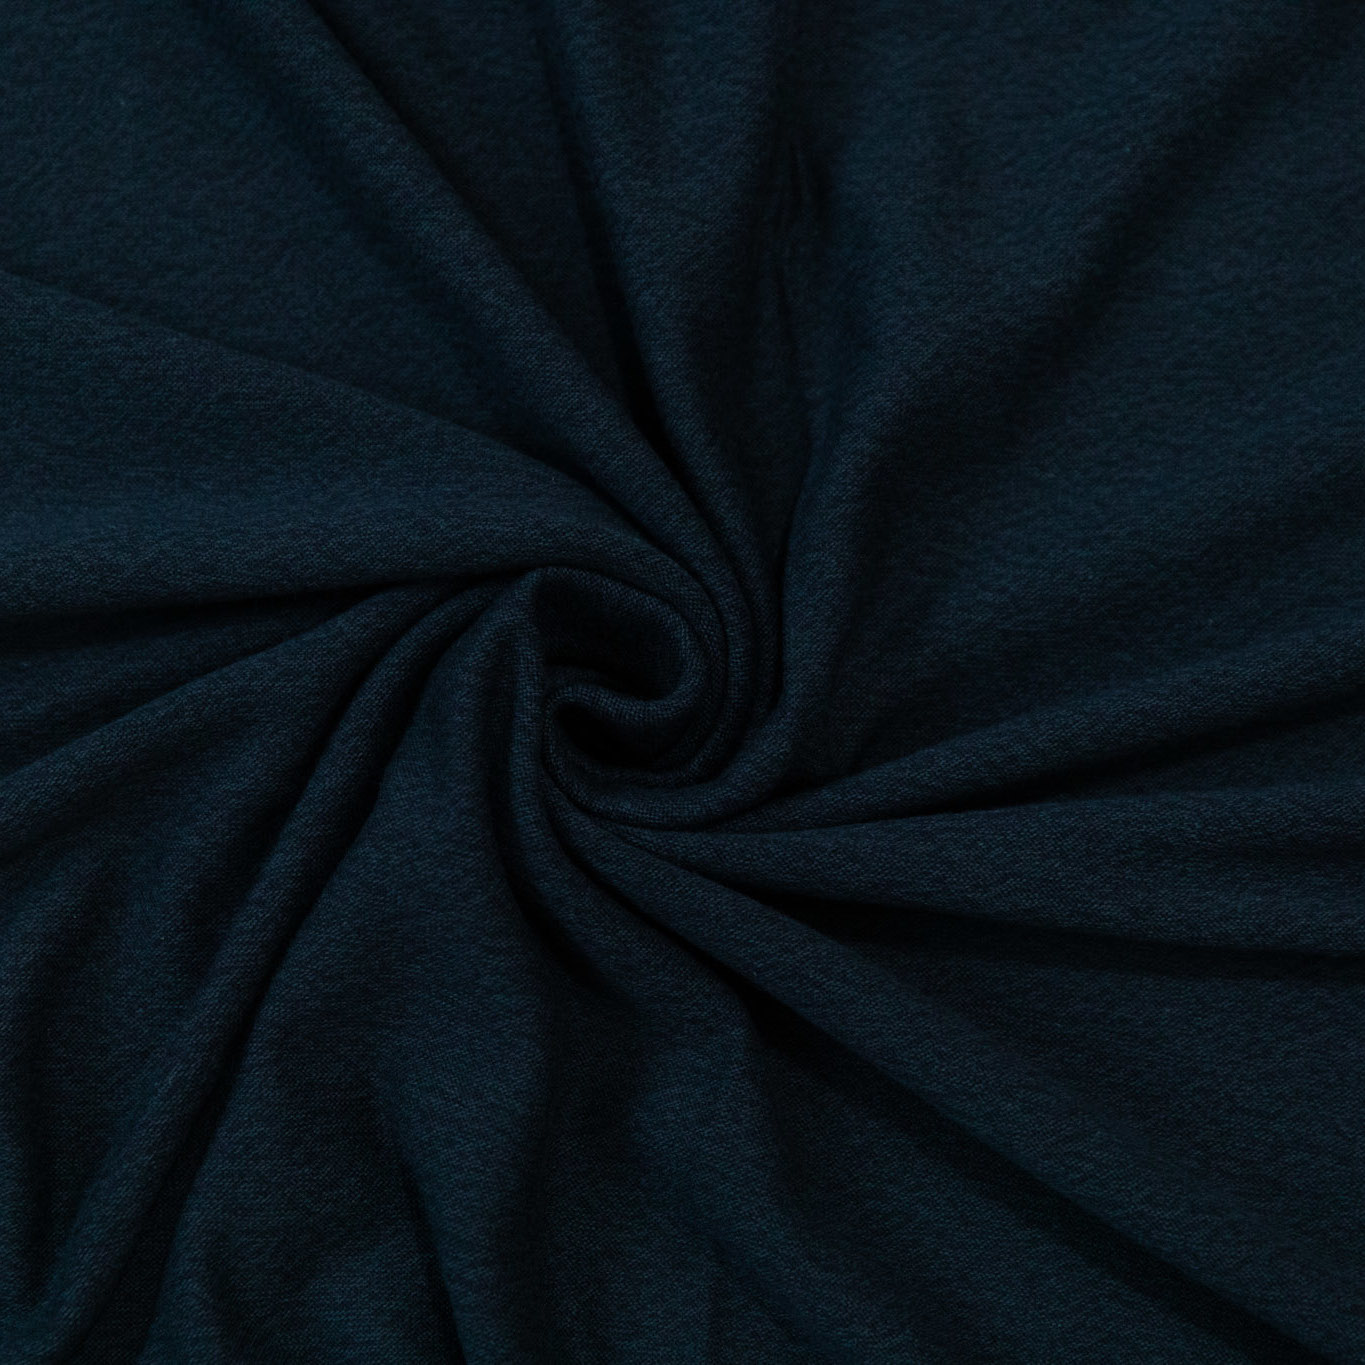 Rayon/cotton/modal knit - Indigo - 1/4m